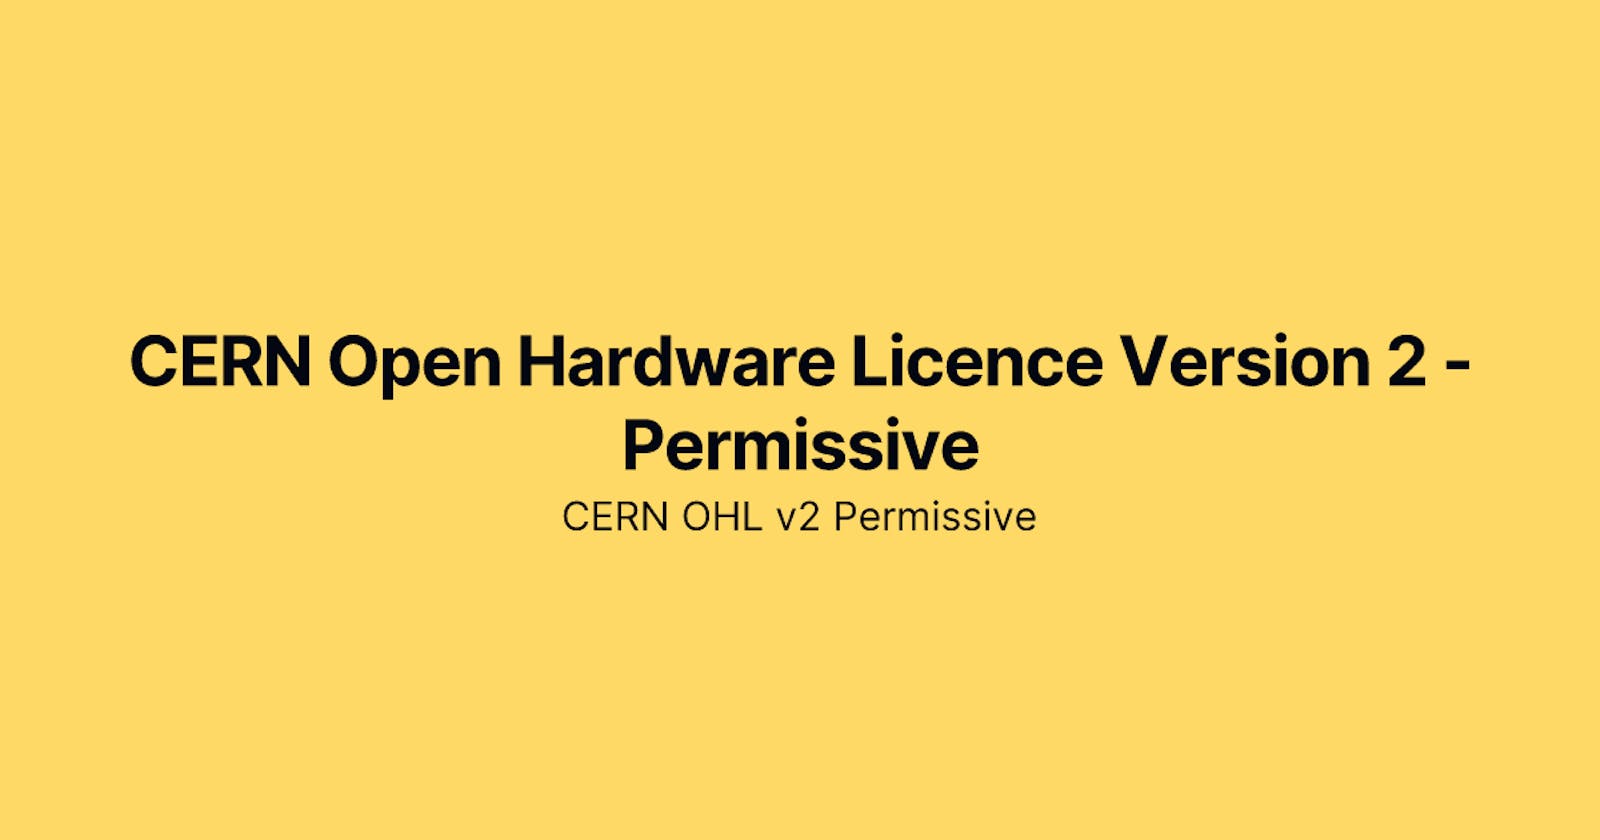 CERN Open Hardware Licence Version 2 - Permissive